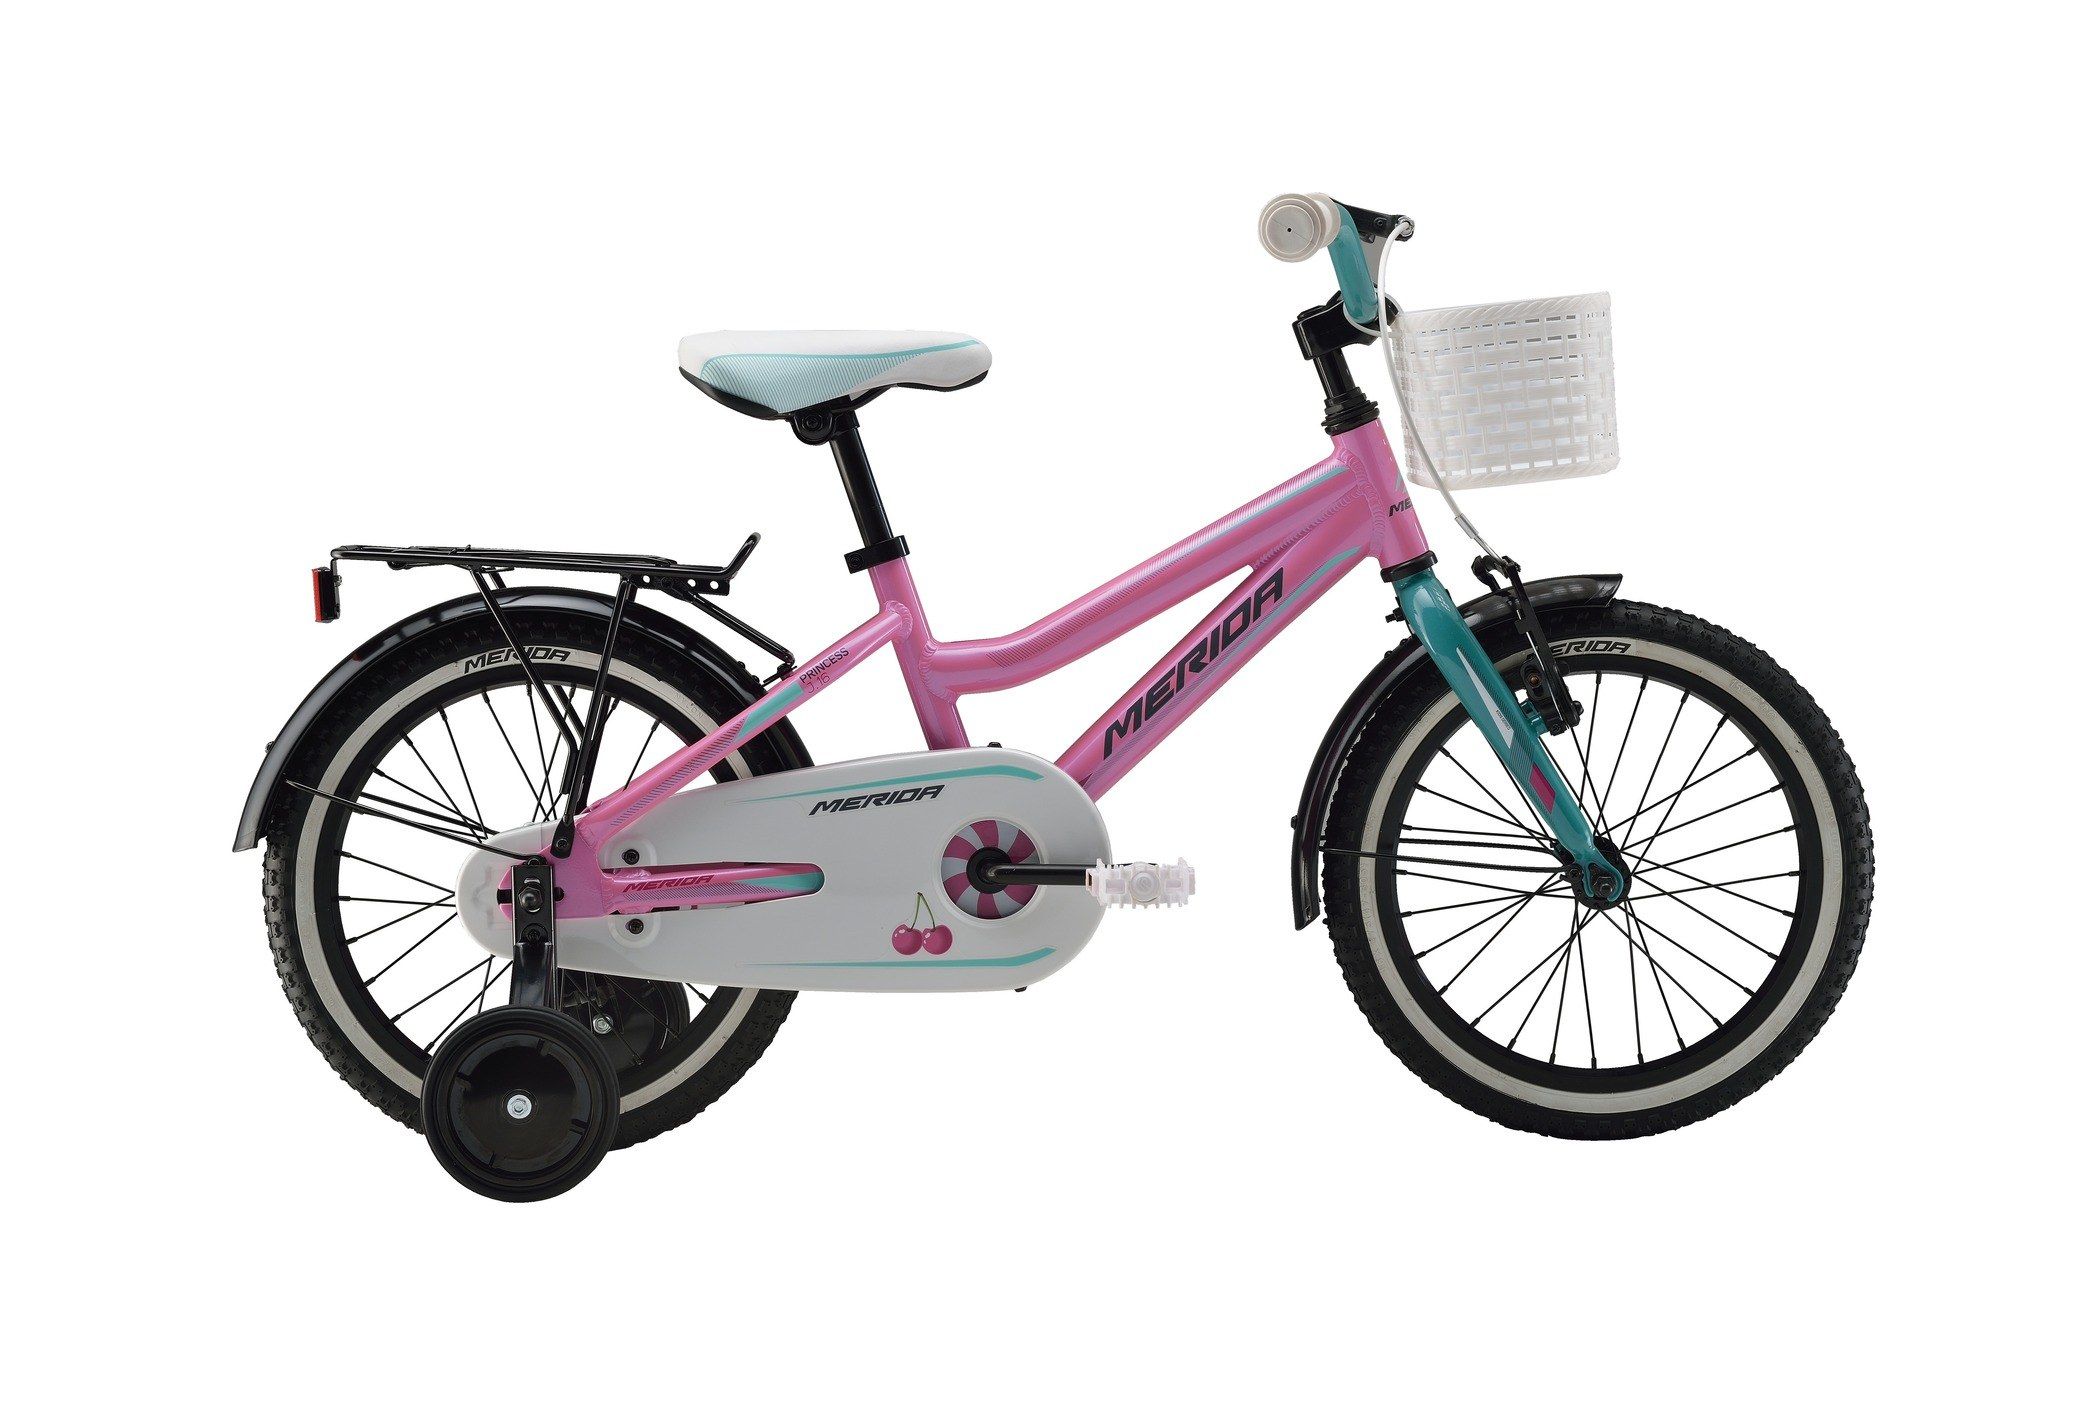  Отзывы о Детском велосипеде Merida Princess J16 2016